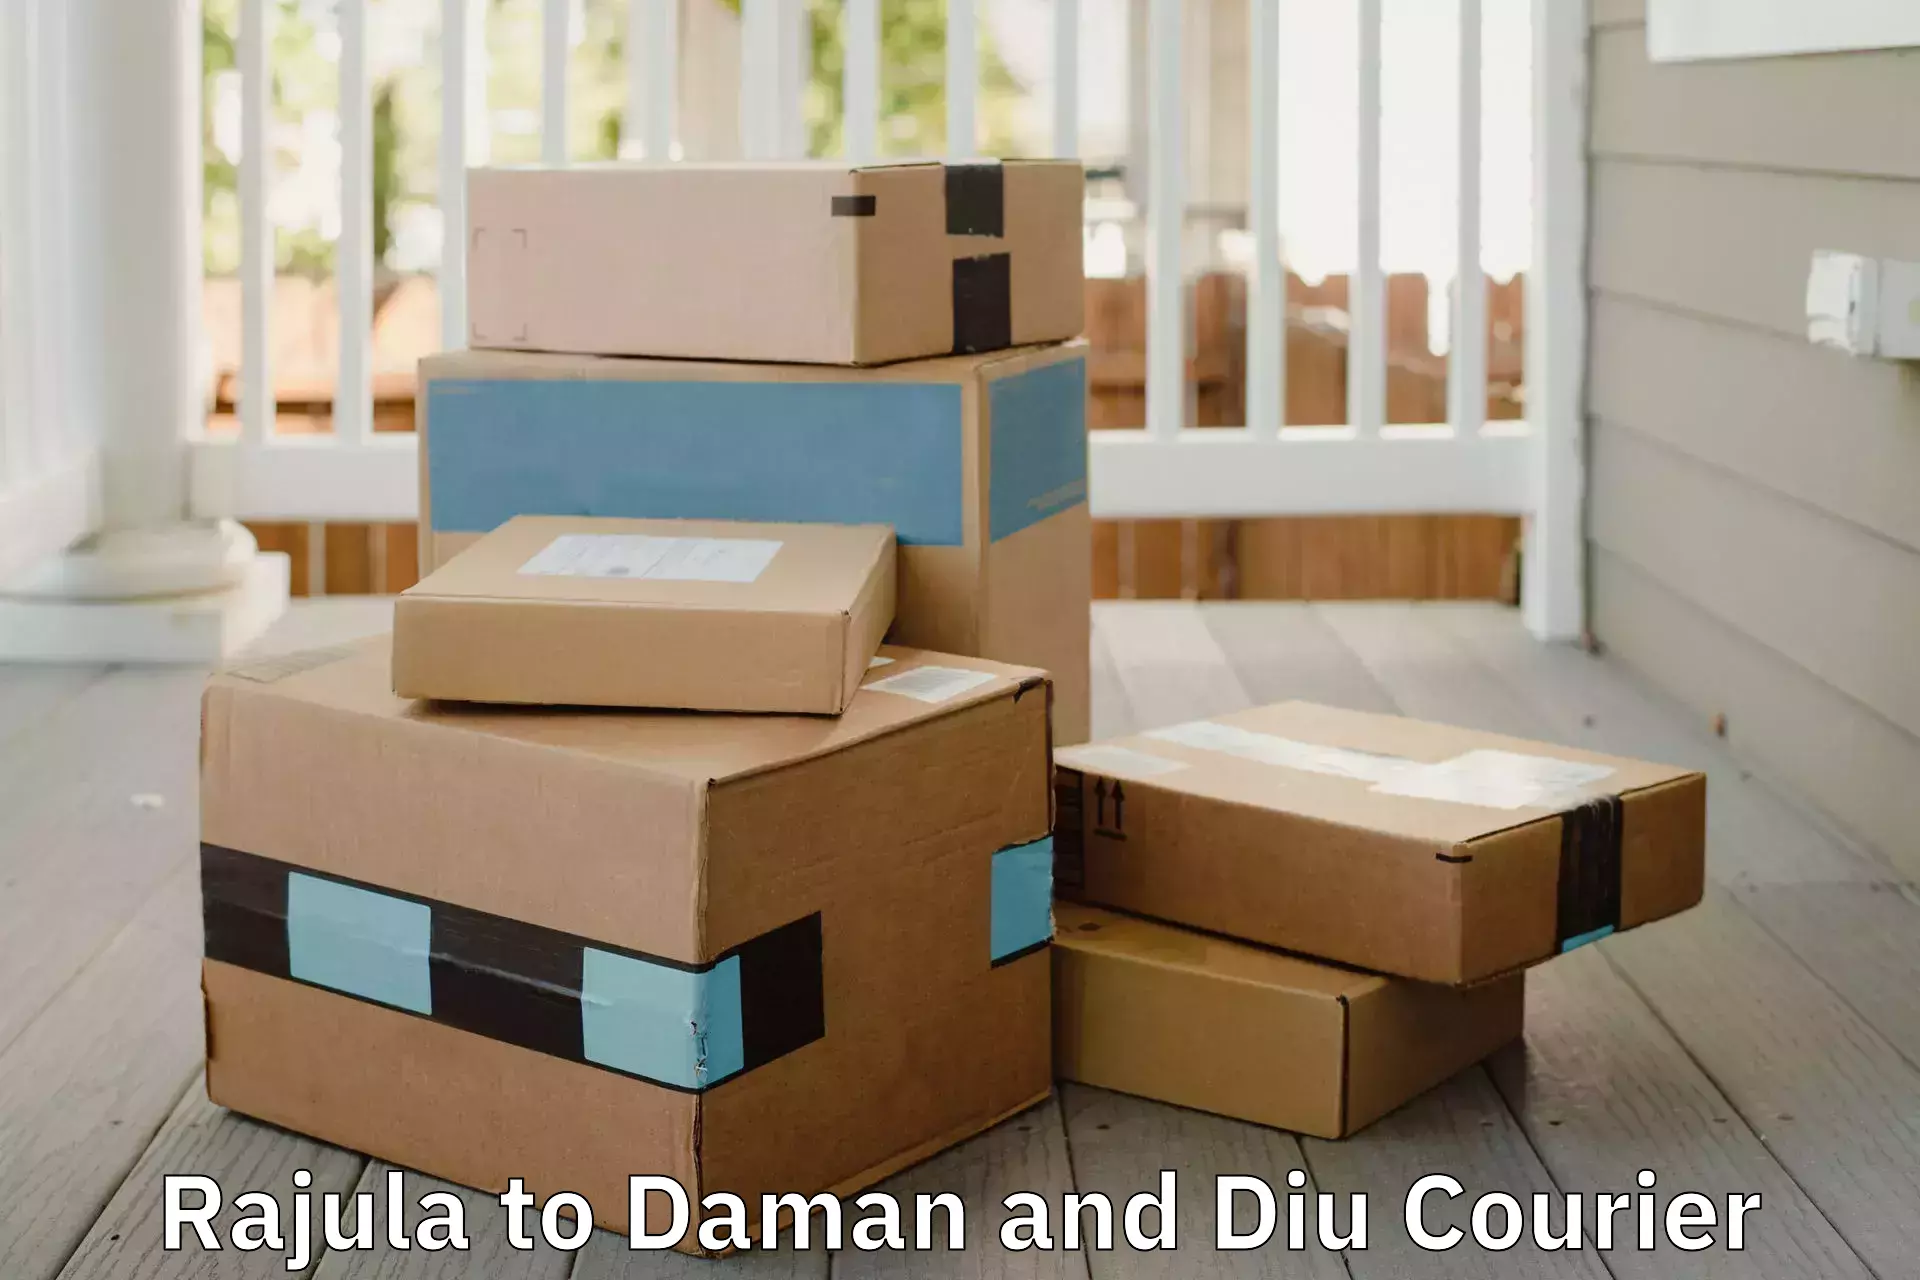 Comprehensive goods transport in Rajula to Daman and Diu